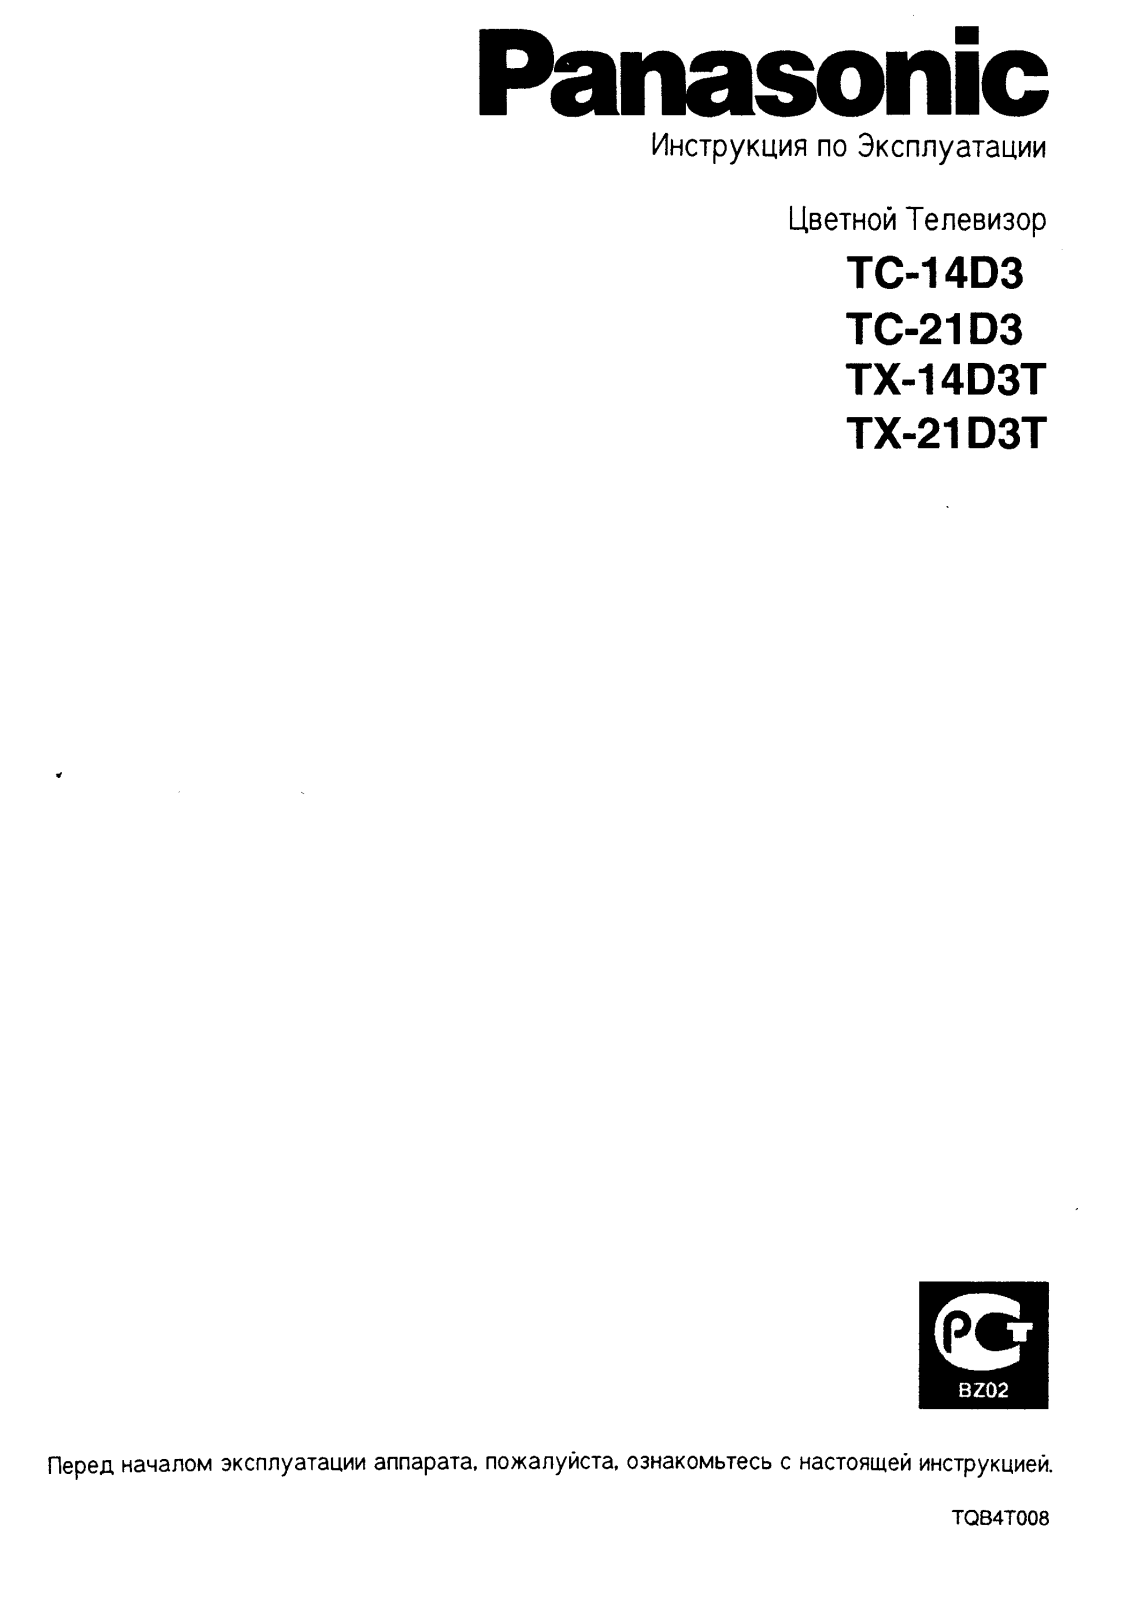 Panasonic TX-21D3T User Manual